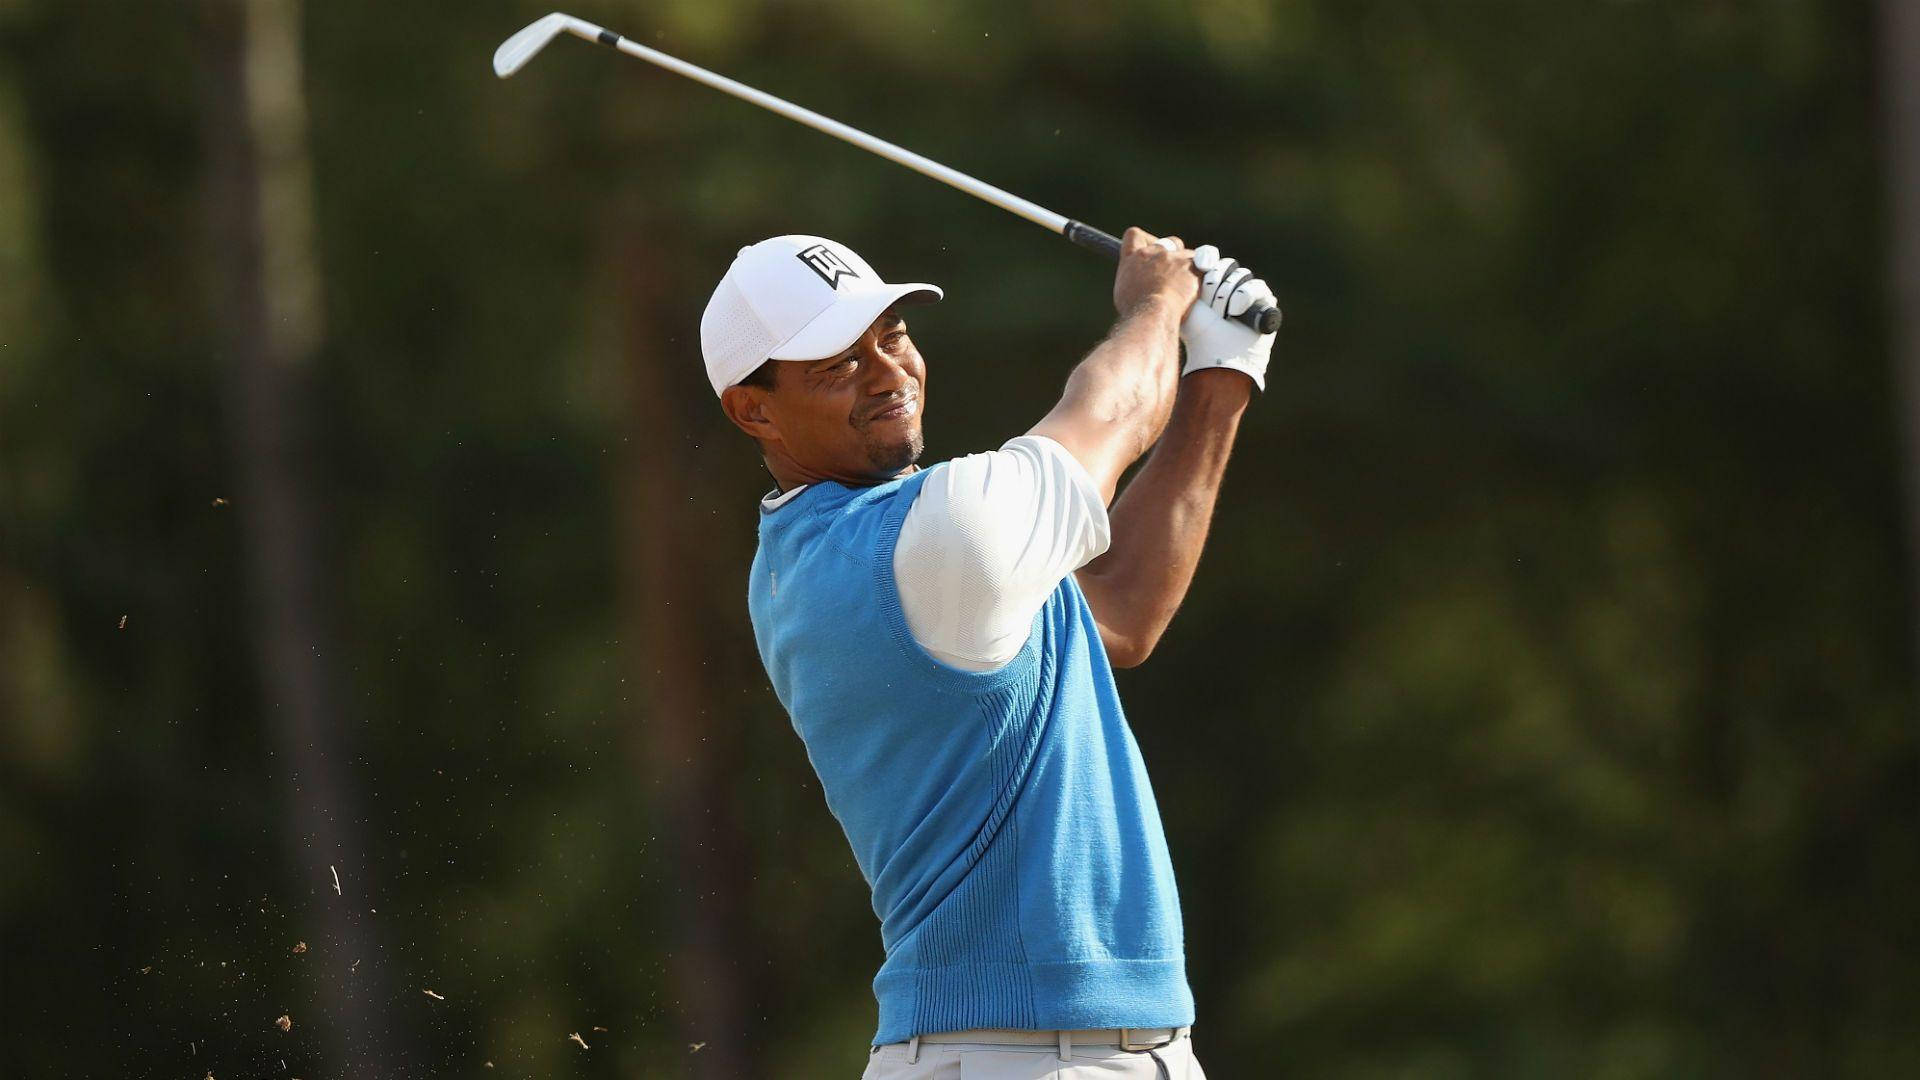 Pga 2017 Tiger Woods Background